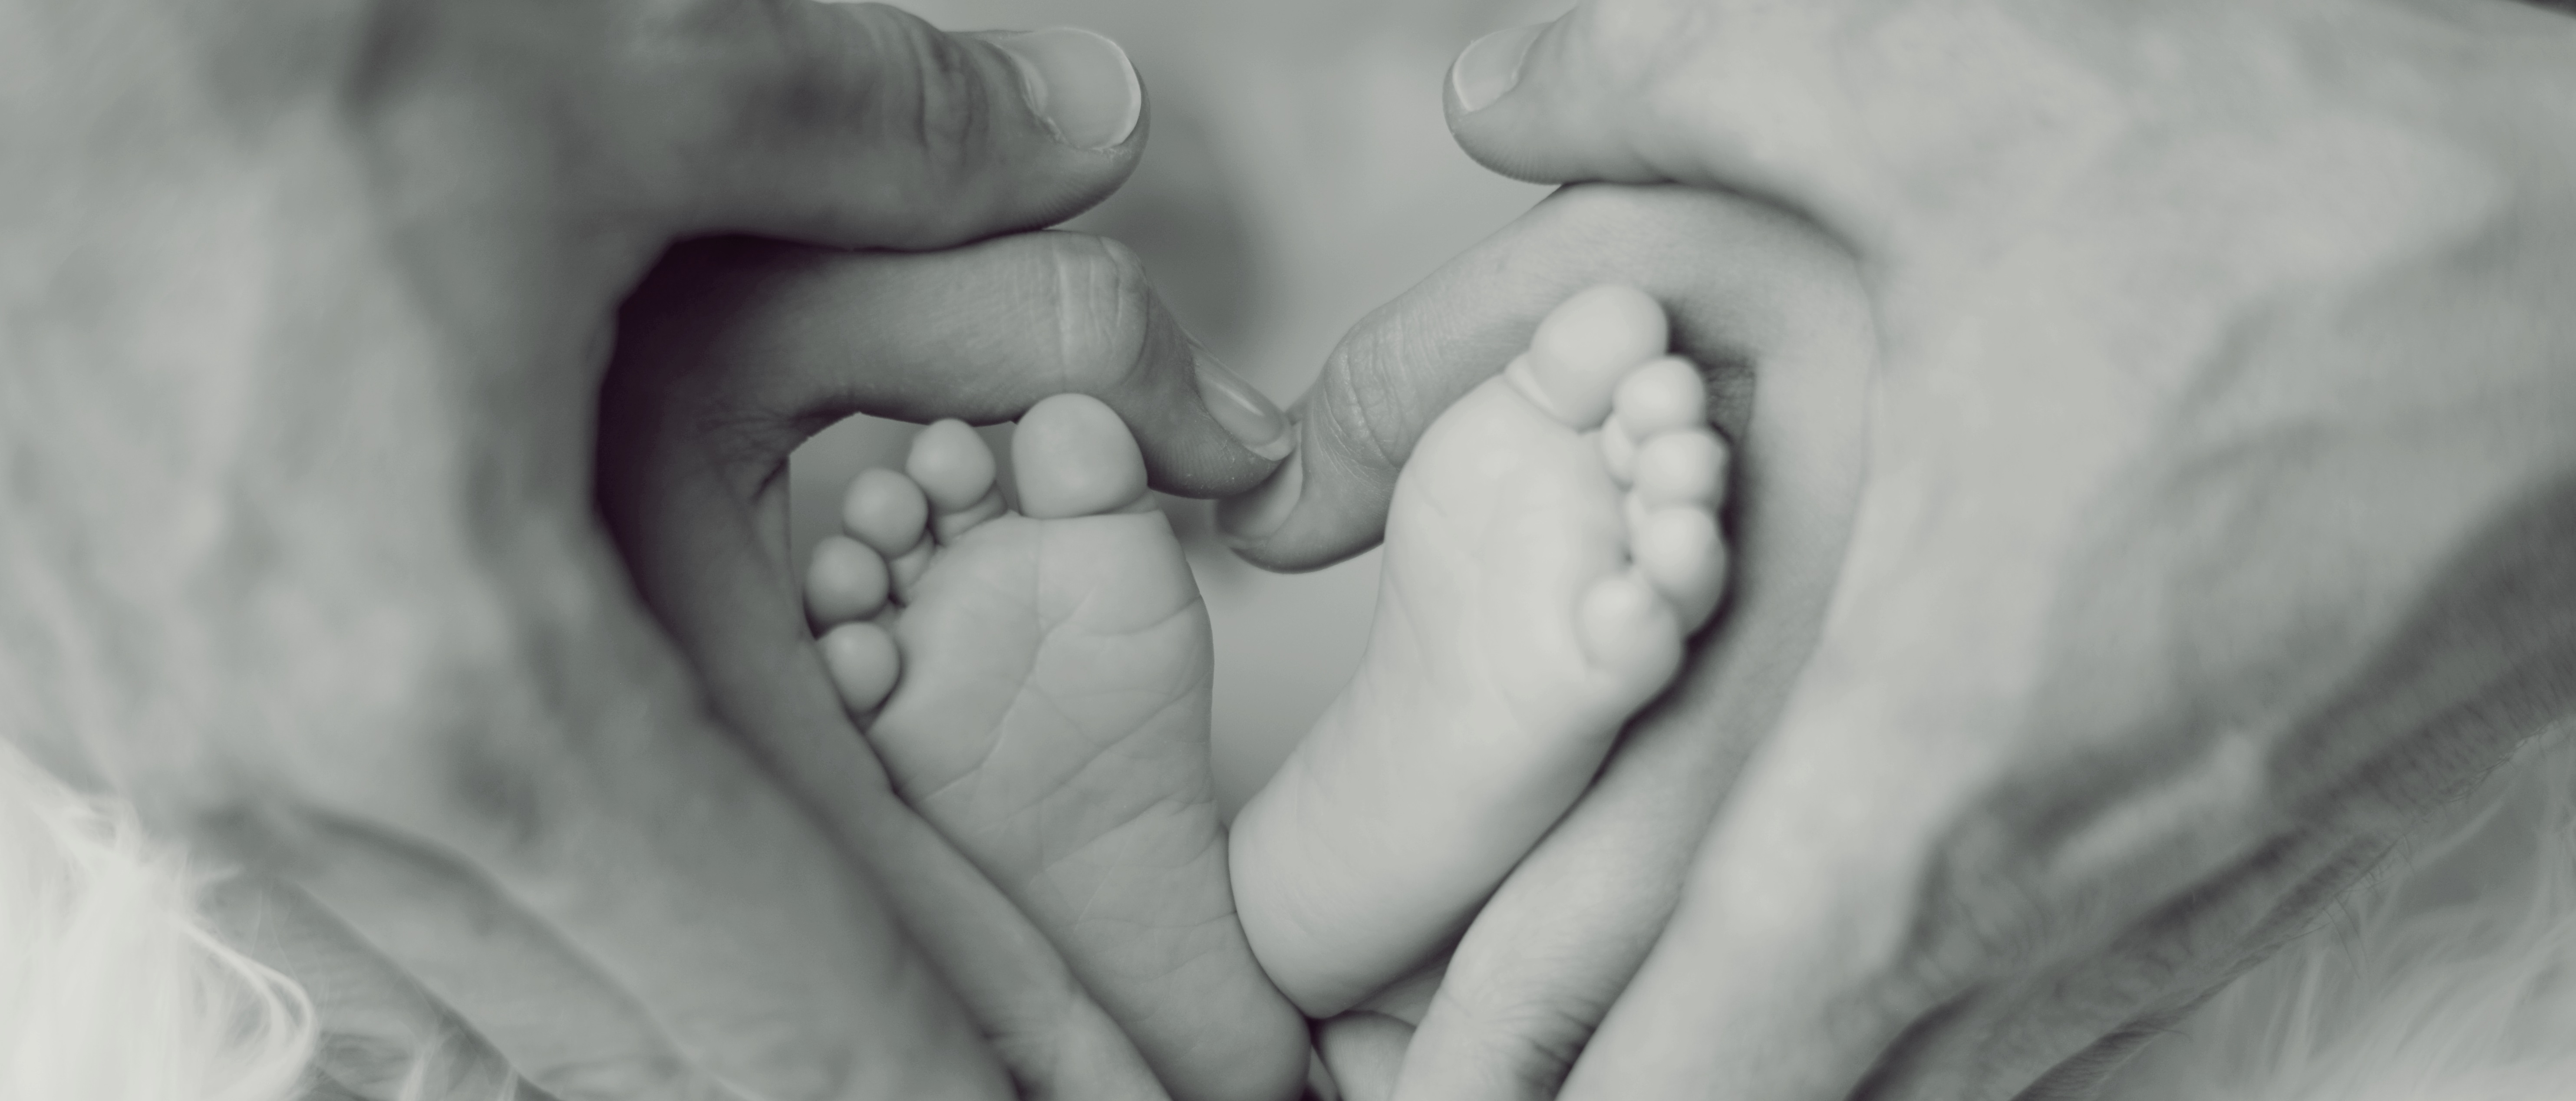 FormaÃ§Ã£o em VigilÃ¢ncia do Ã“bito Materno, Infantil e Fetal e de AtuaÃ§Ã£o em ComitÃªs de Mortalidade